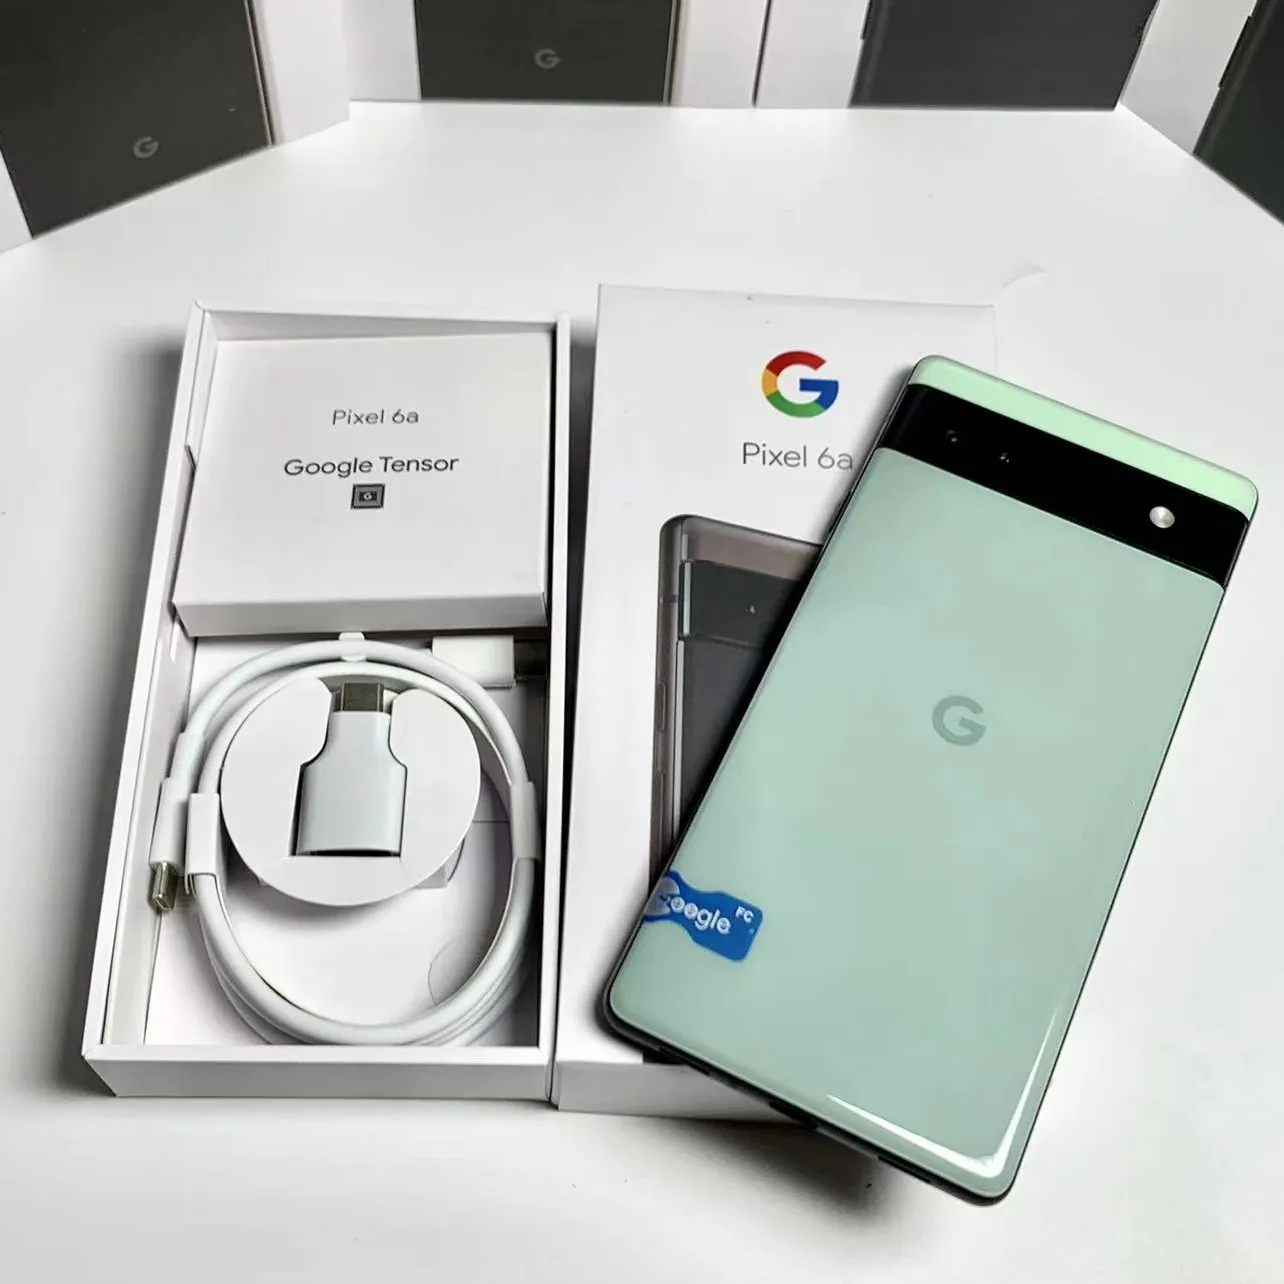 Téléphone Android Smartphone déverrouillé pour Google Pixel 6a 6 pro Original Brand New Unlocked 6.4 inch Mobile